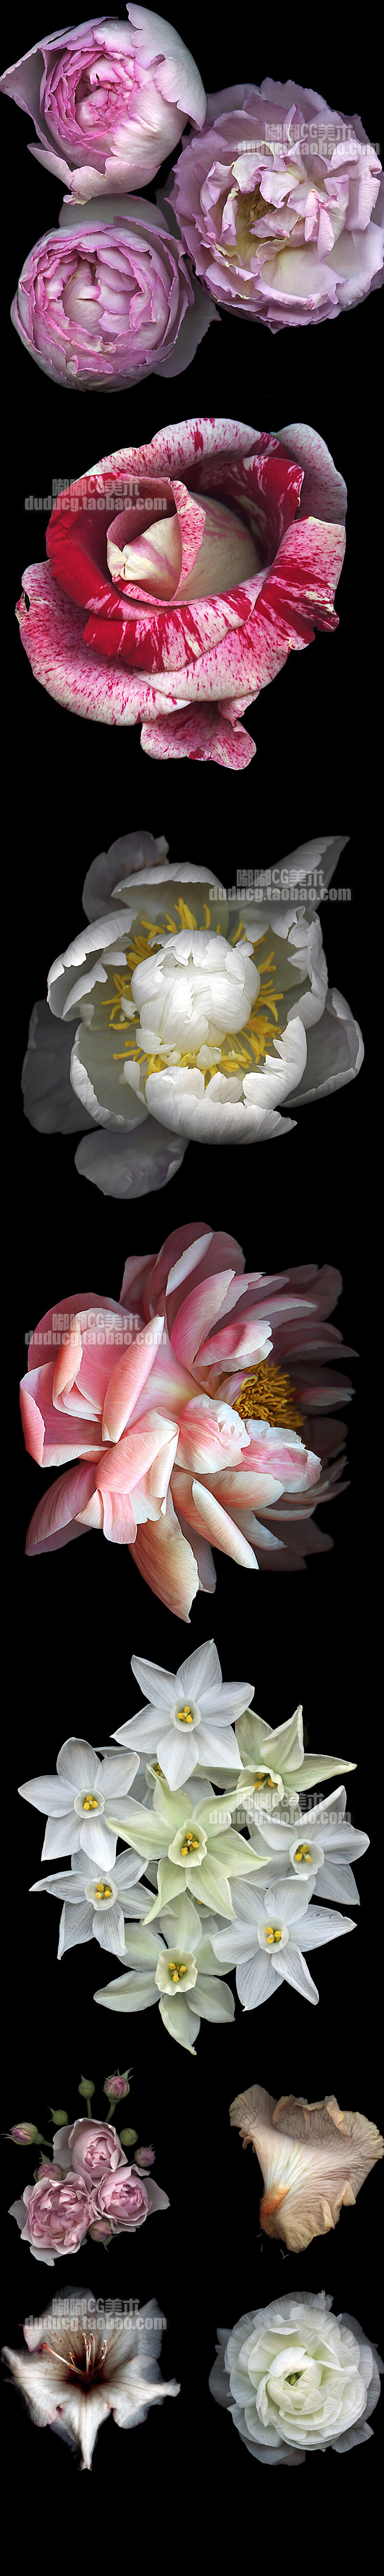 219 美术设计素材 Kate Scott 植物花卉摄影集 光影 色彩写真